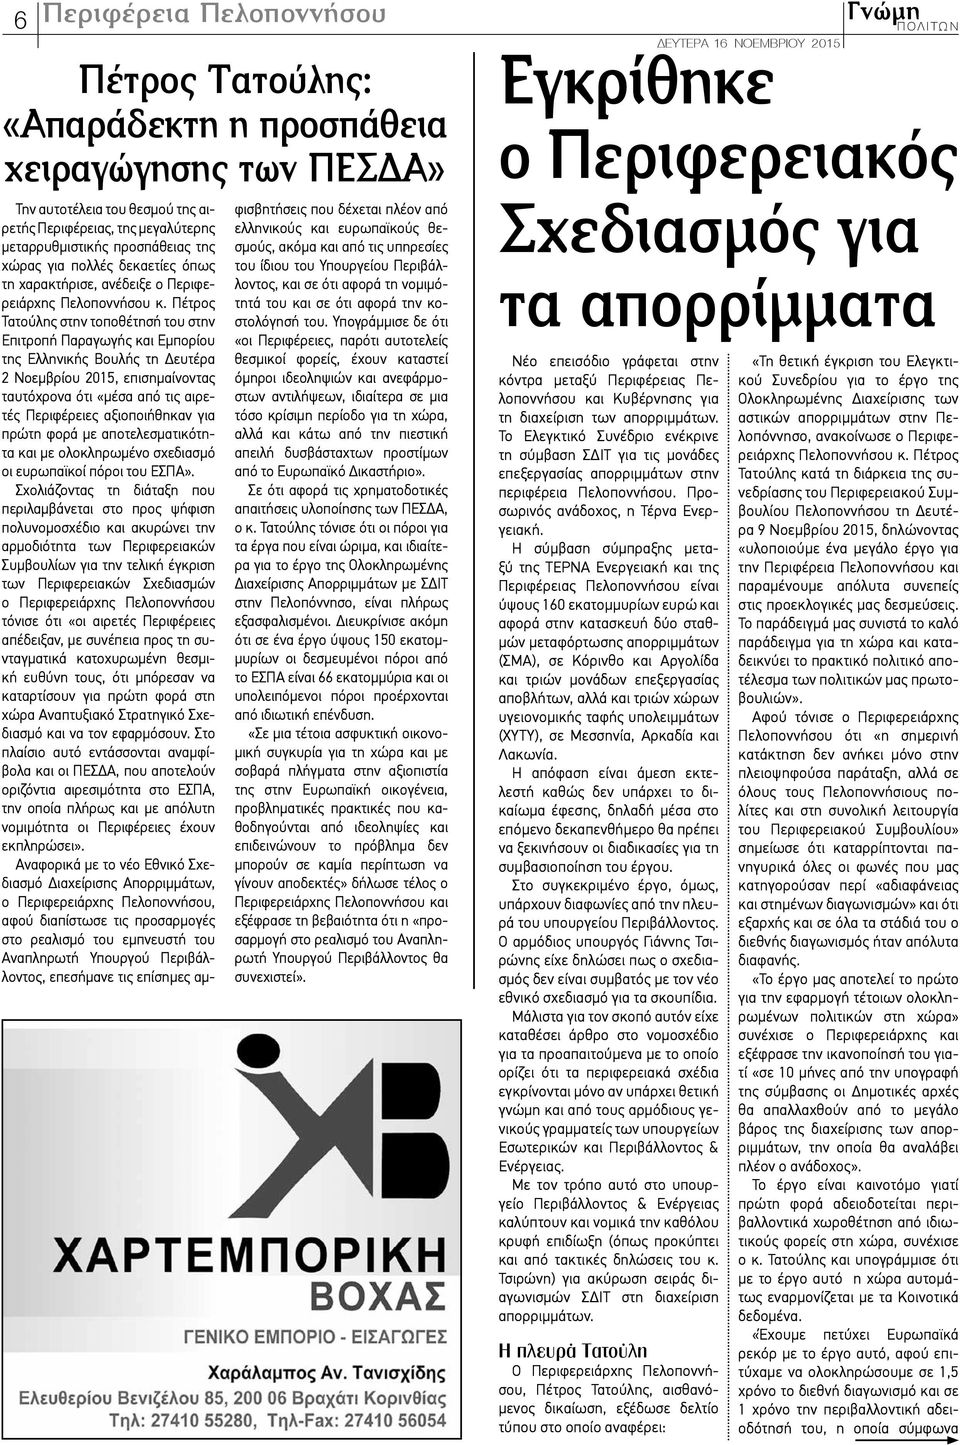 Πέτρος Τατούλης στην τοποθέτησή του στην Επιτροπή Παραγωγής και Εμπορίου της Ελληνικής Βουλής τη Δευτέρα 2 Νοεμβρίου 2015, επισημαίνοντας ταυτόχρονα ότι «μέσα από τις αιρετές Περιφέρειες